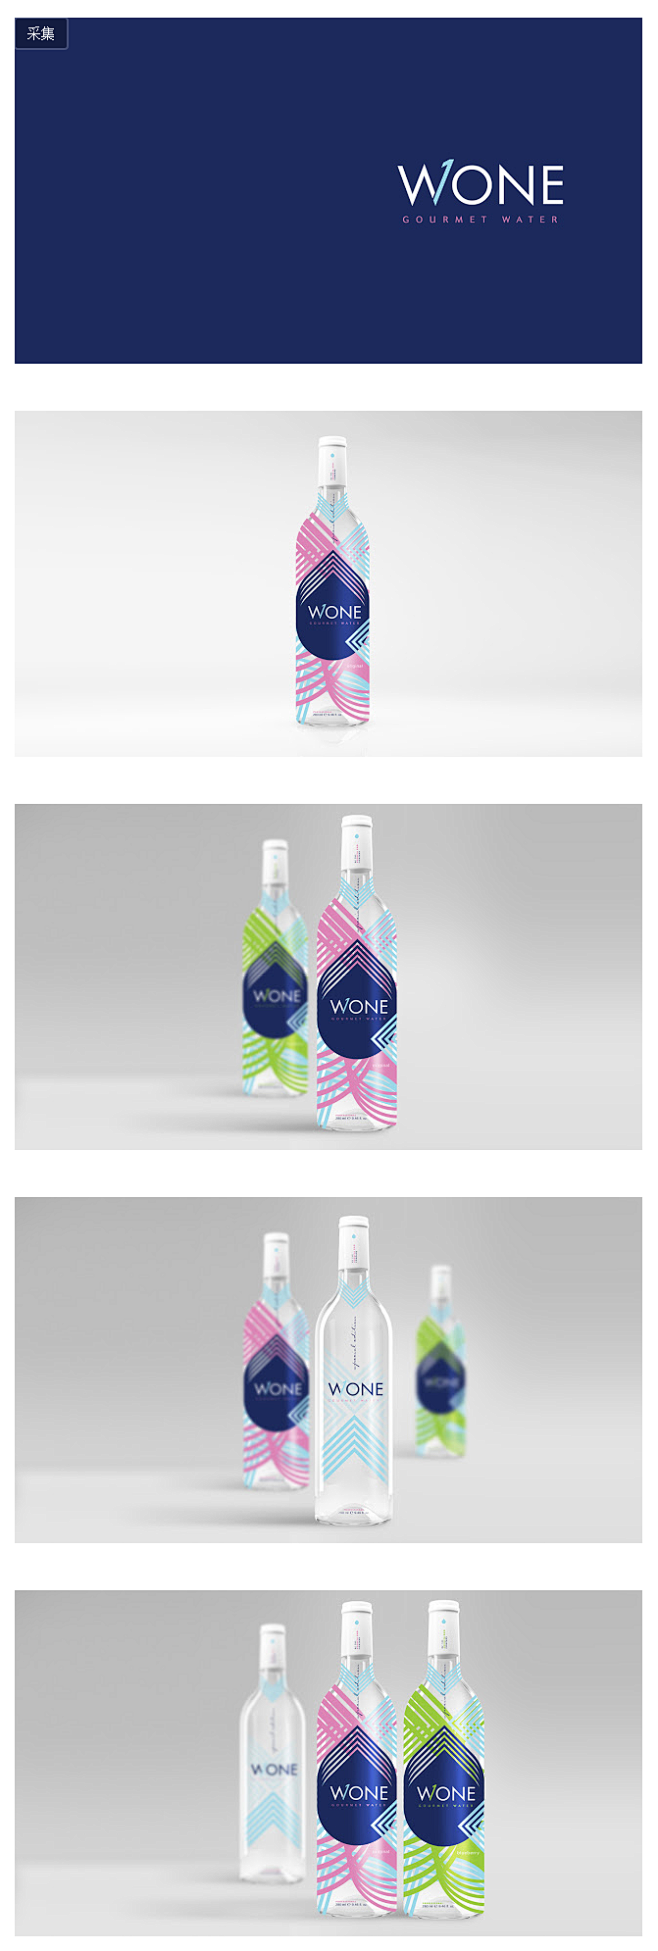 优雅的线条和配色:WONE纯净水包装设计...